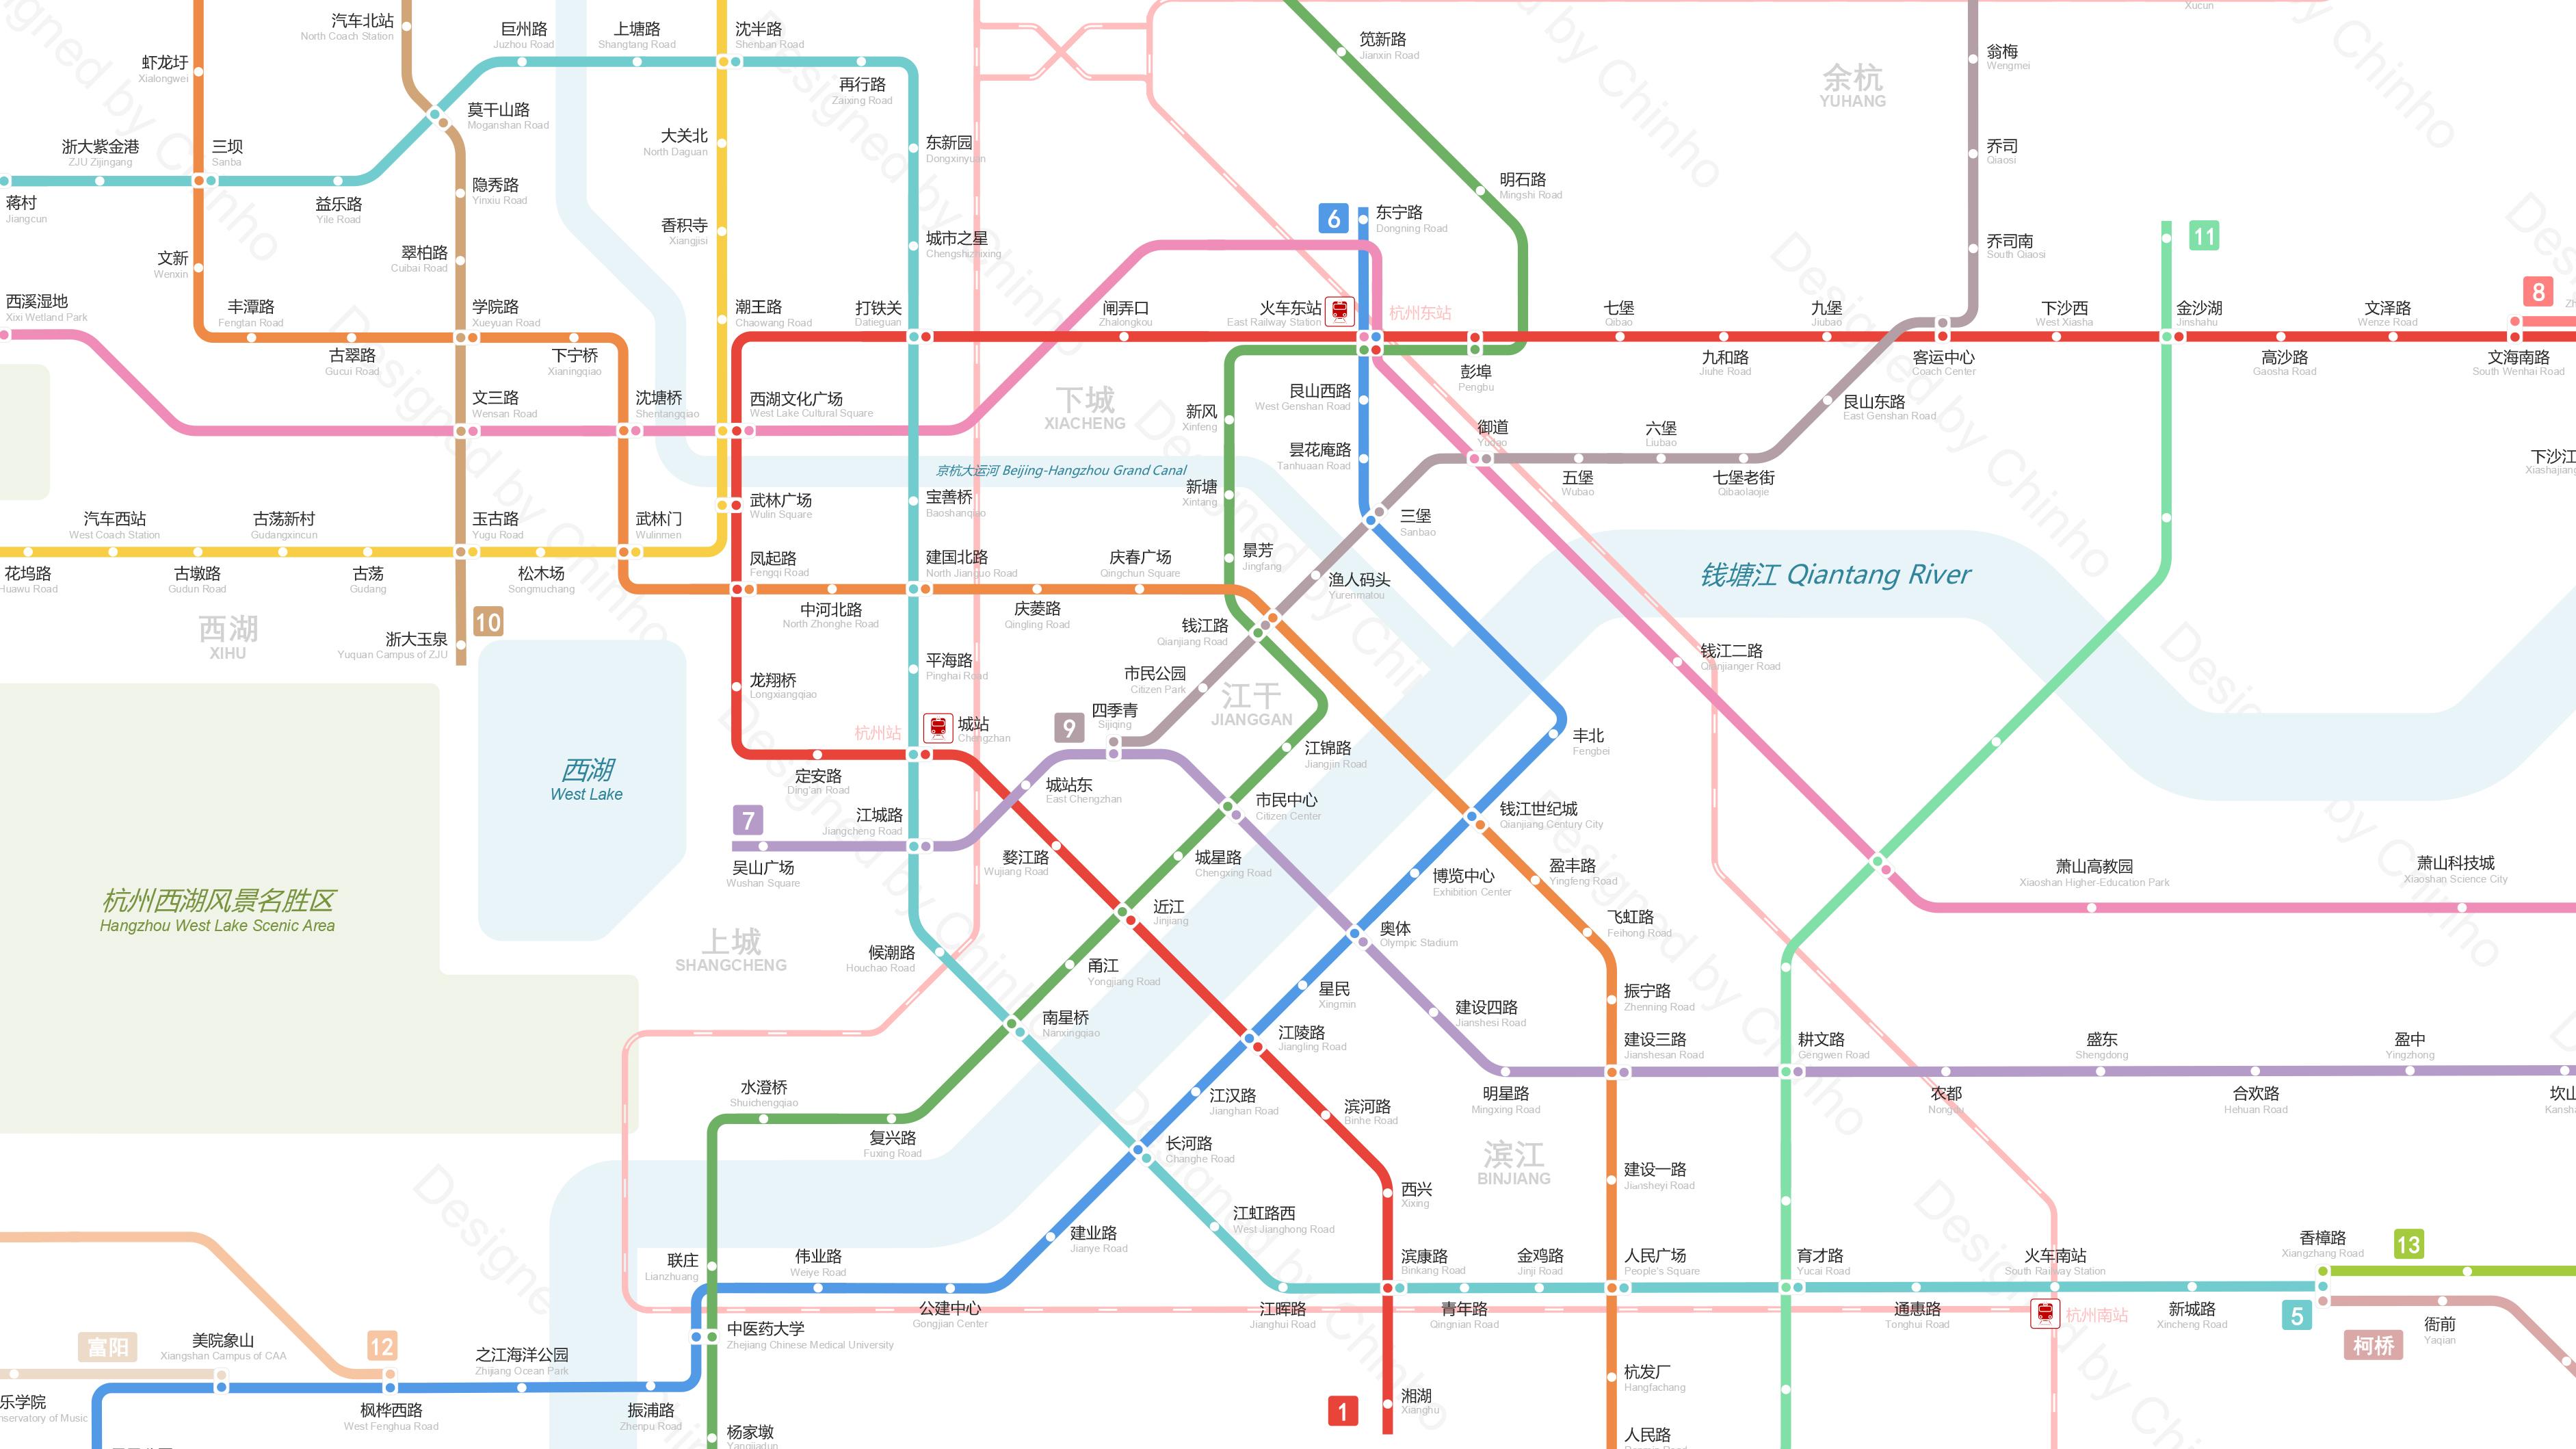 据称,2022年亚运会前,杭州将形成15条轨道交通线(包括杭州地铁1号线至